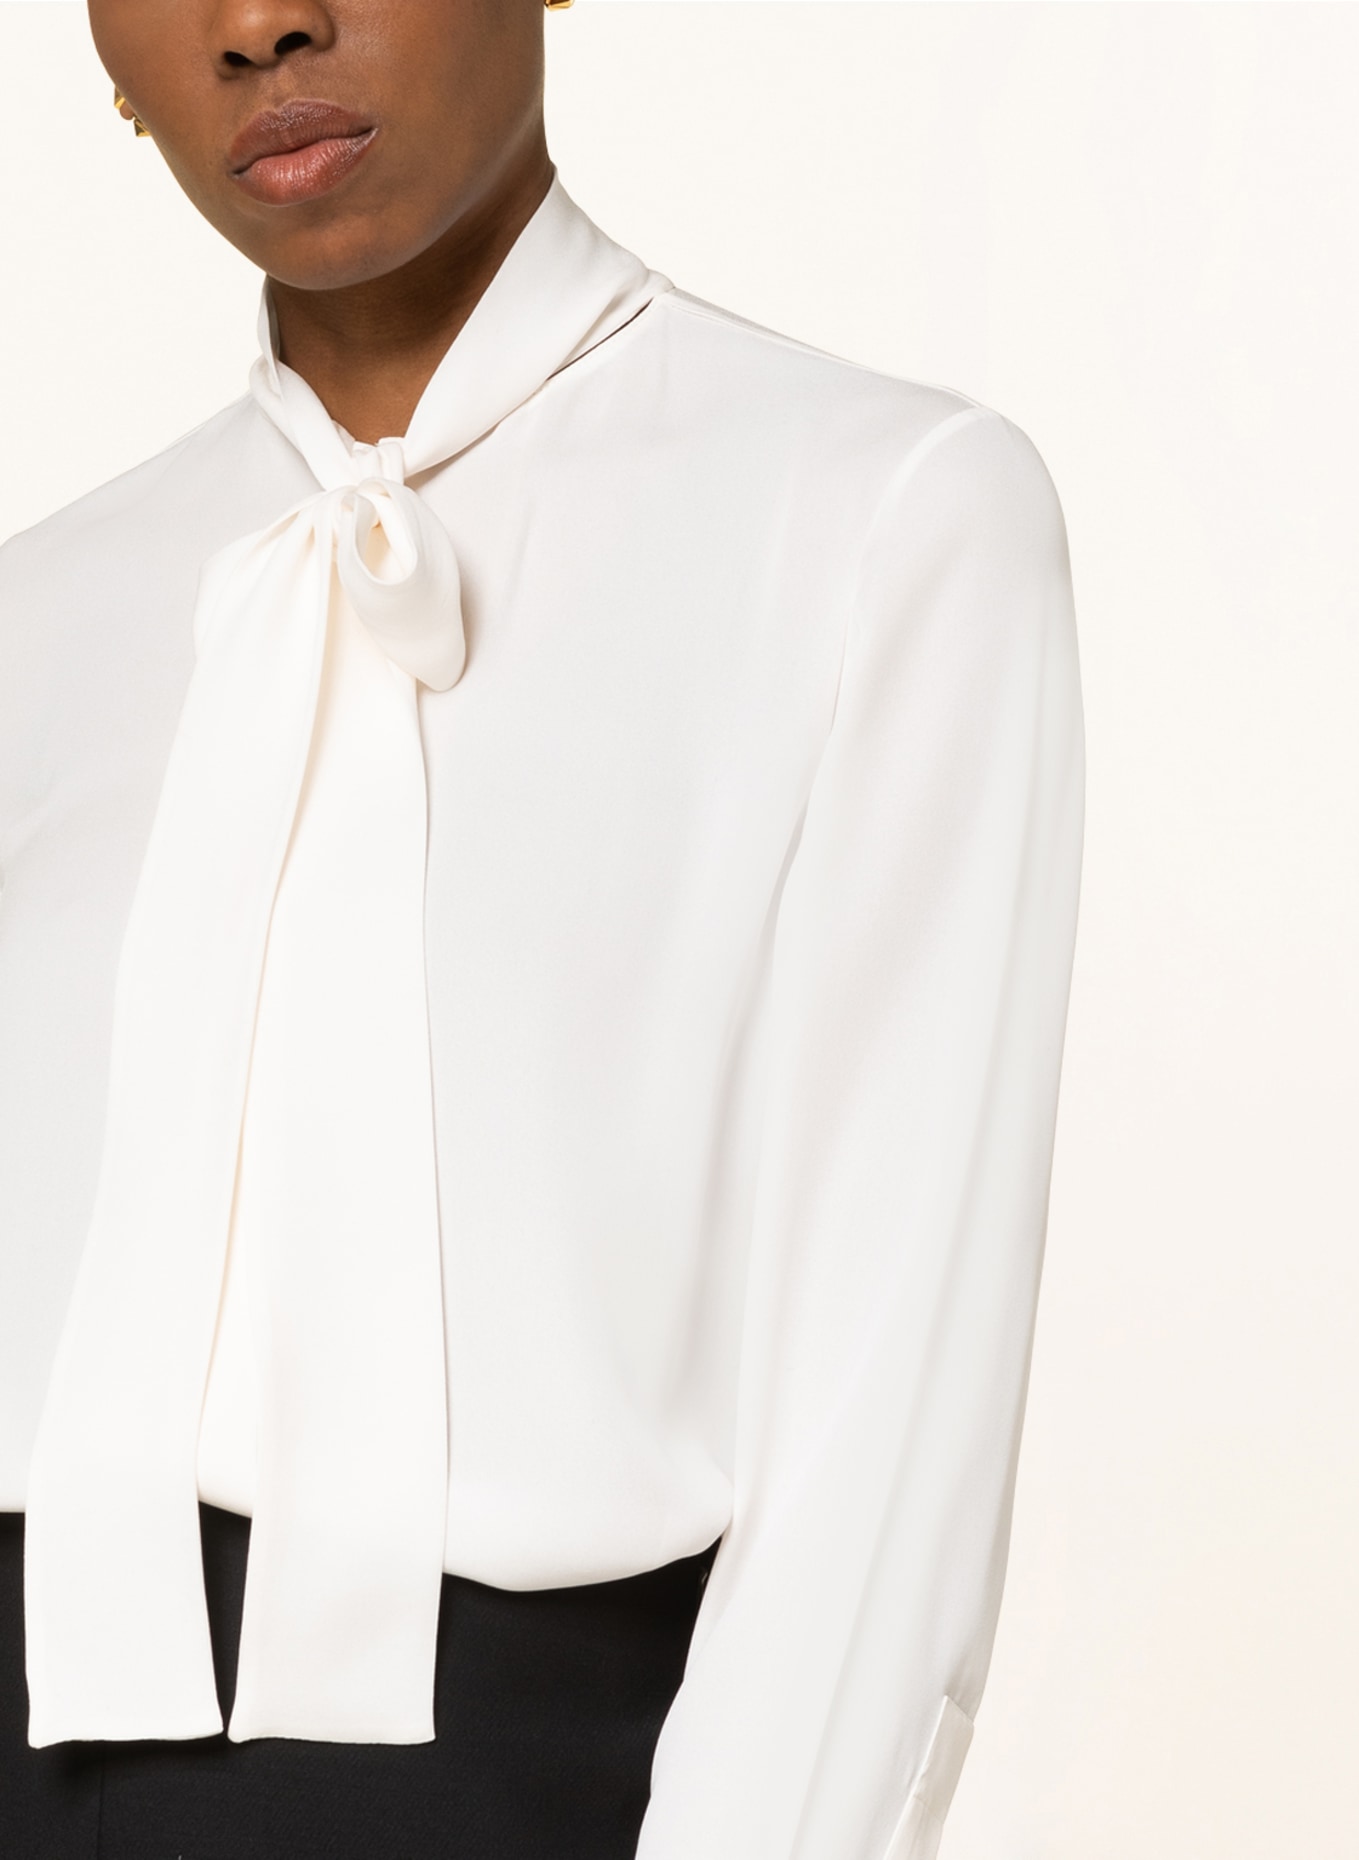 VALENTINO Bow-tie blouse in silk , Color: ECRU (Image 4)